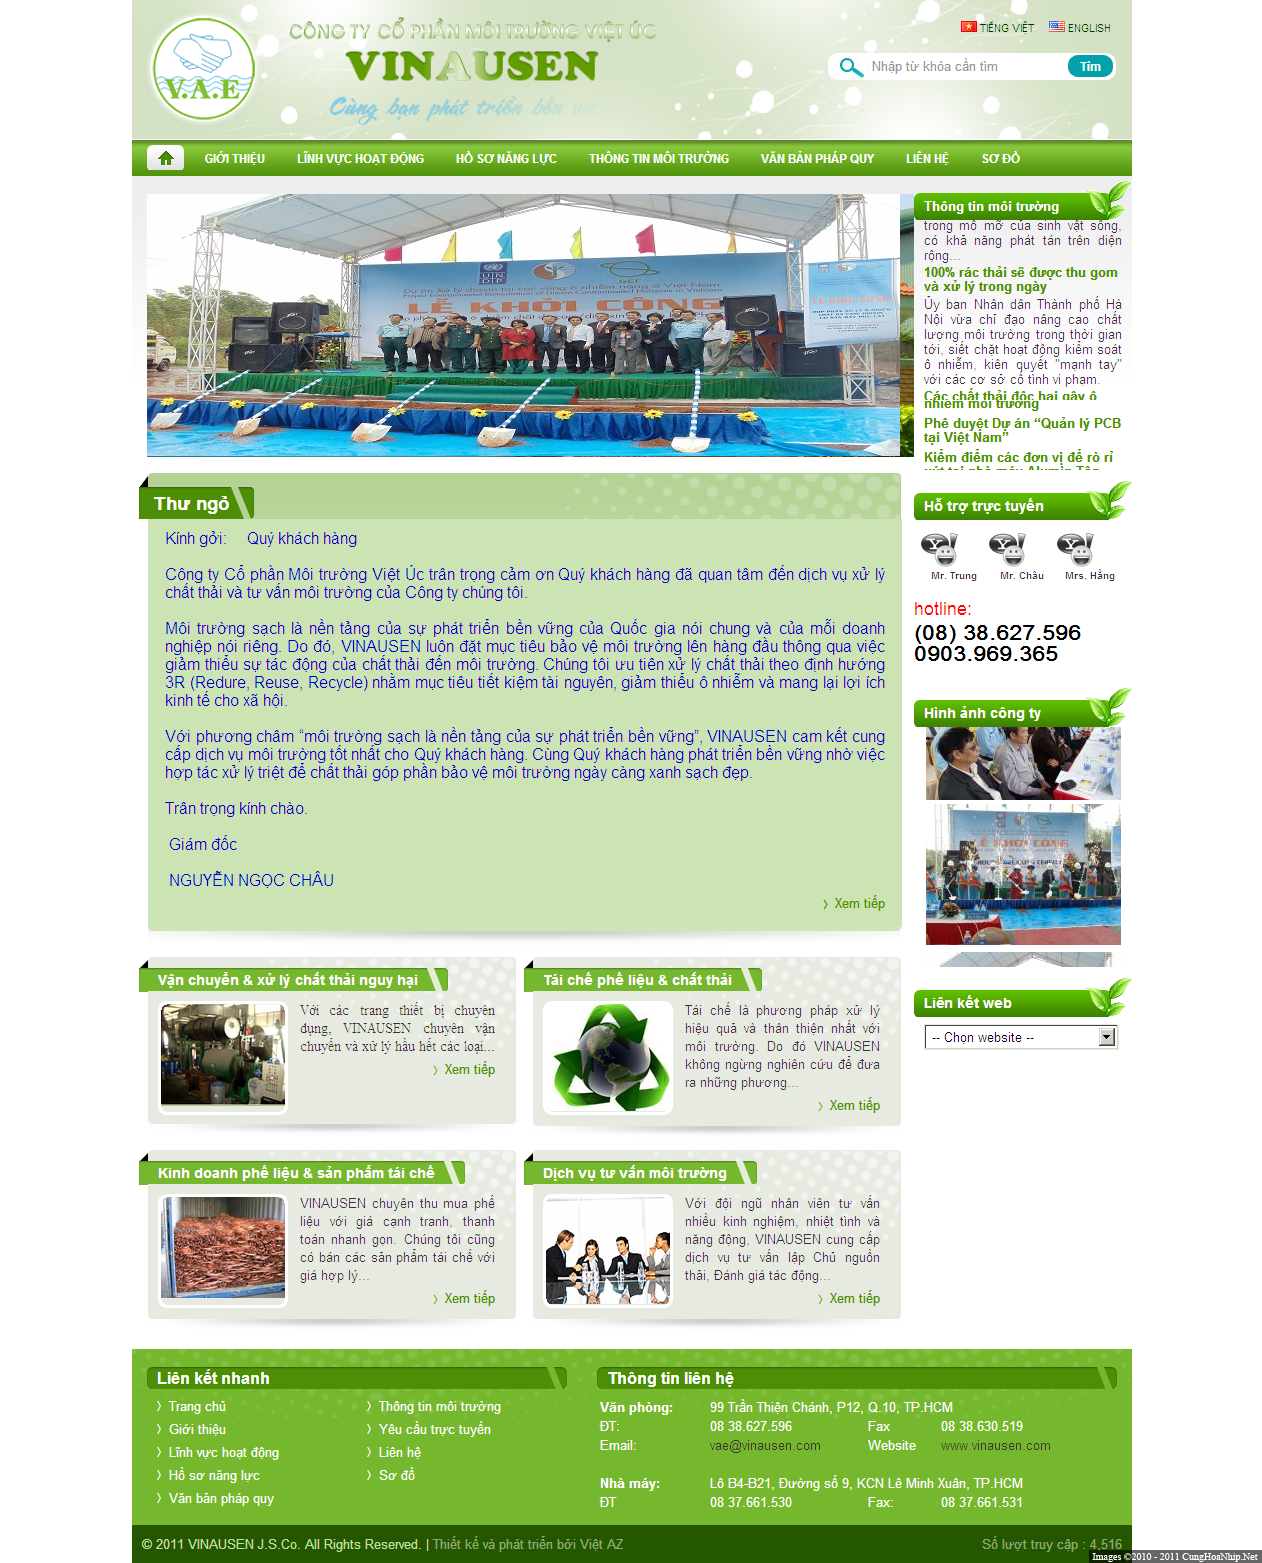 Share code tin tức, giới thiệu công ty môi trường vinausen.com Cunghoanhip.net-2012-04-30_161554